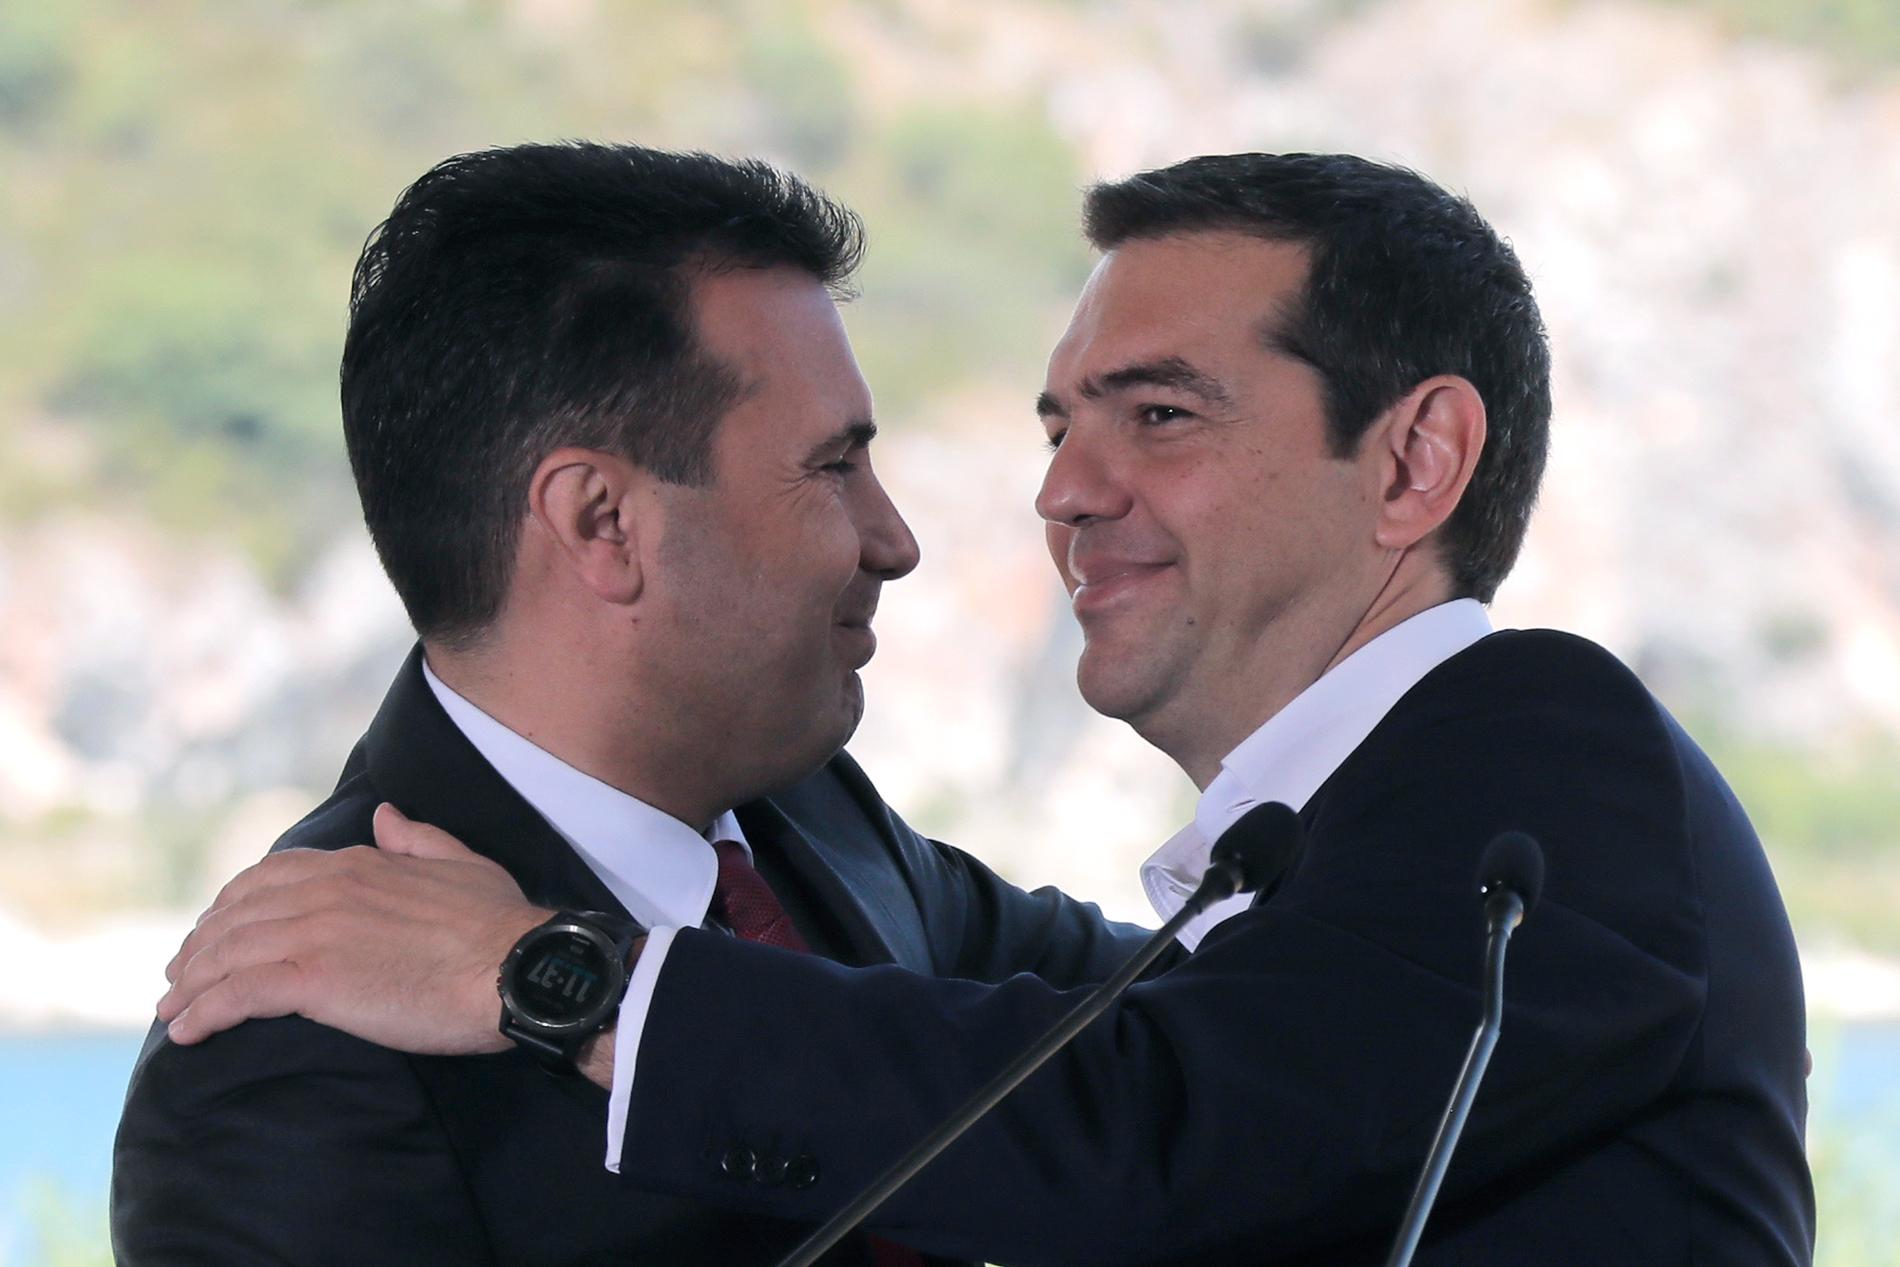 Makedoniens premiärminister Zoran Zaev och Greklands premiärminister Alexis Tsipras har hyllats för den uppgörelse som kan göra slut på den långdragna konflikten kring Makedoniens namn. Men om det räcker för att få Nobels fredspris är en annan sak. Arkivfoto.